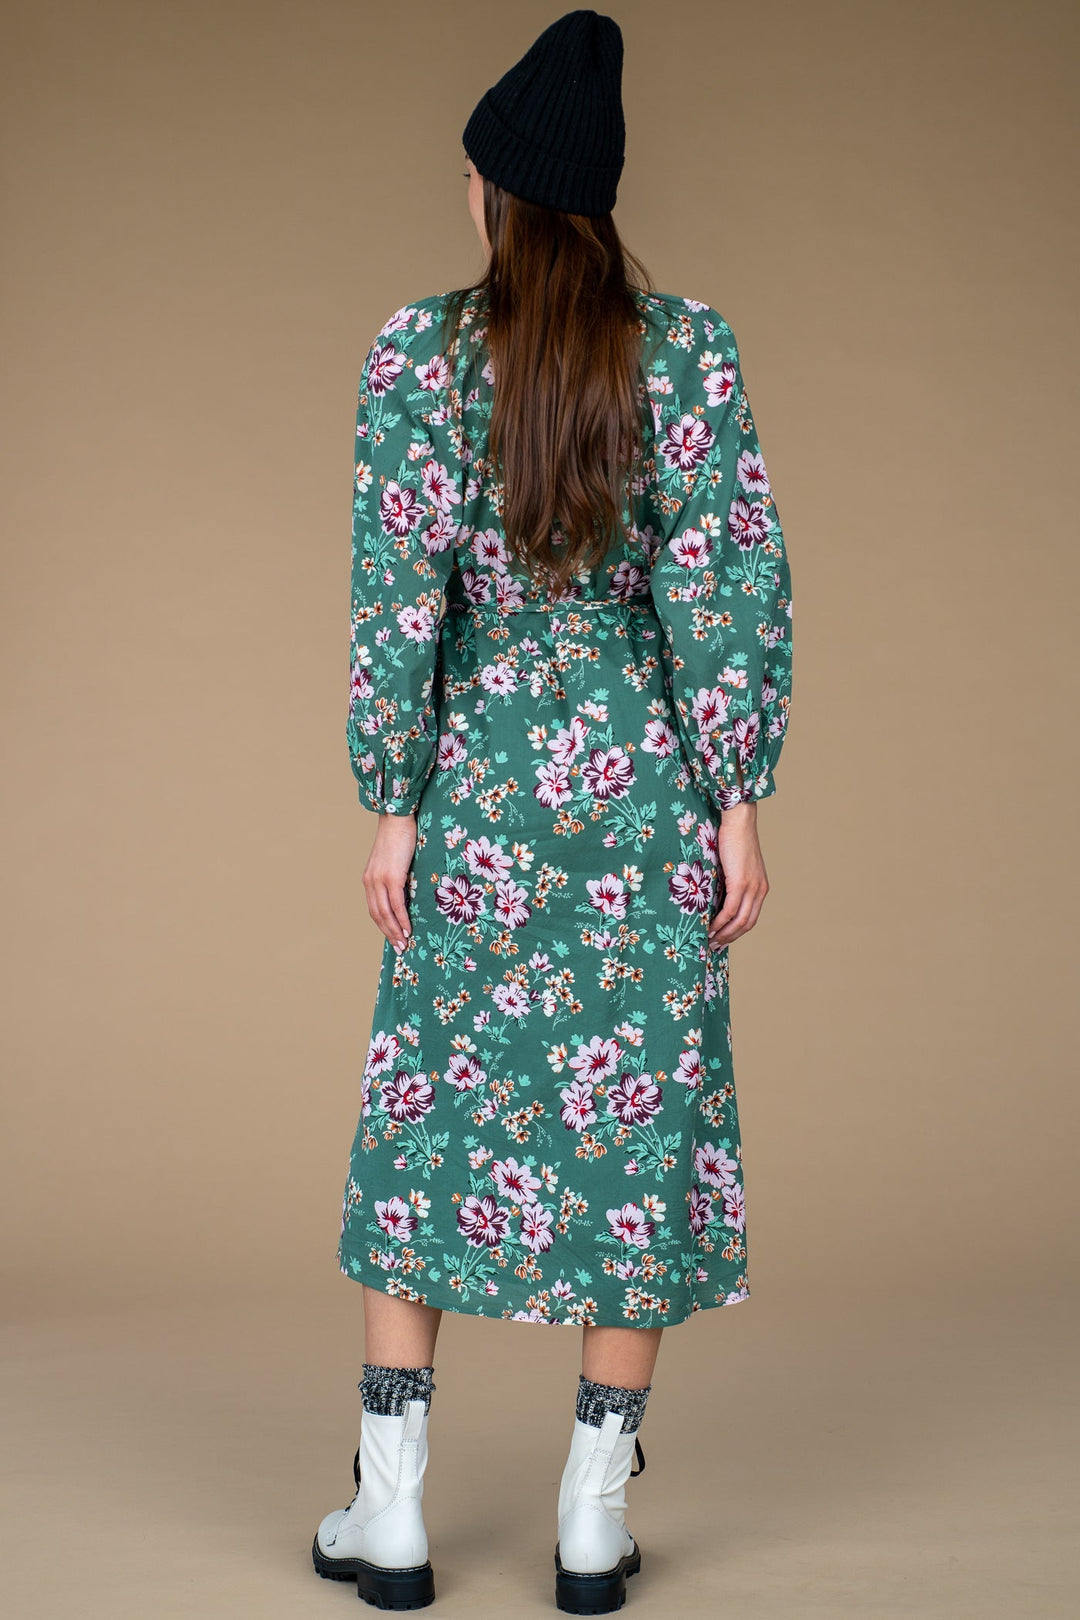 Olivia James Dress Evelyn Dress in Apres Floral